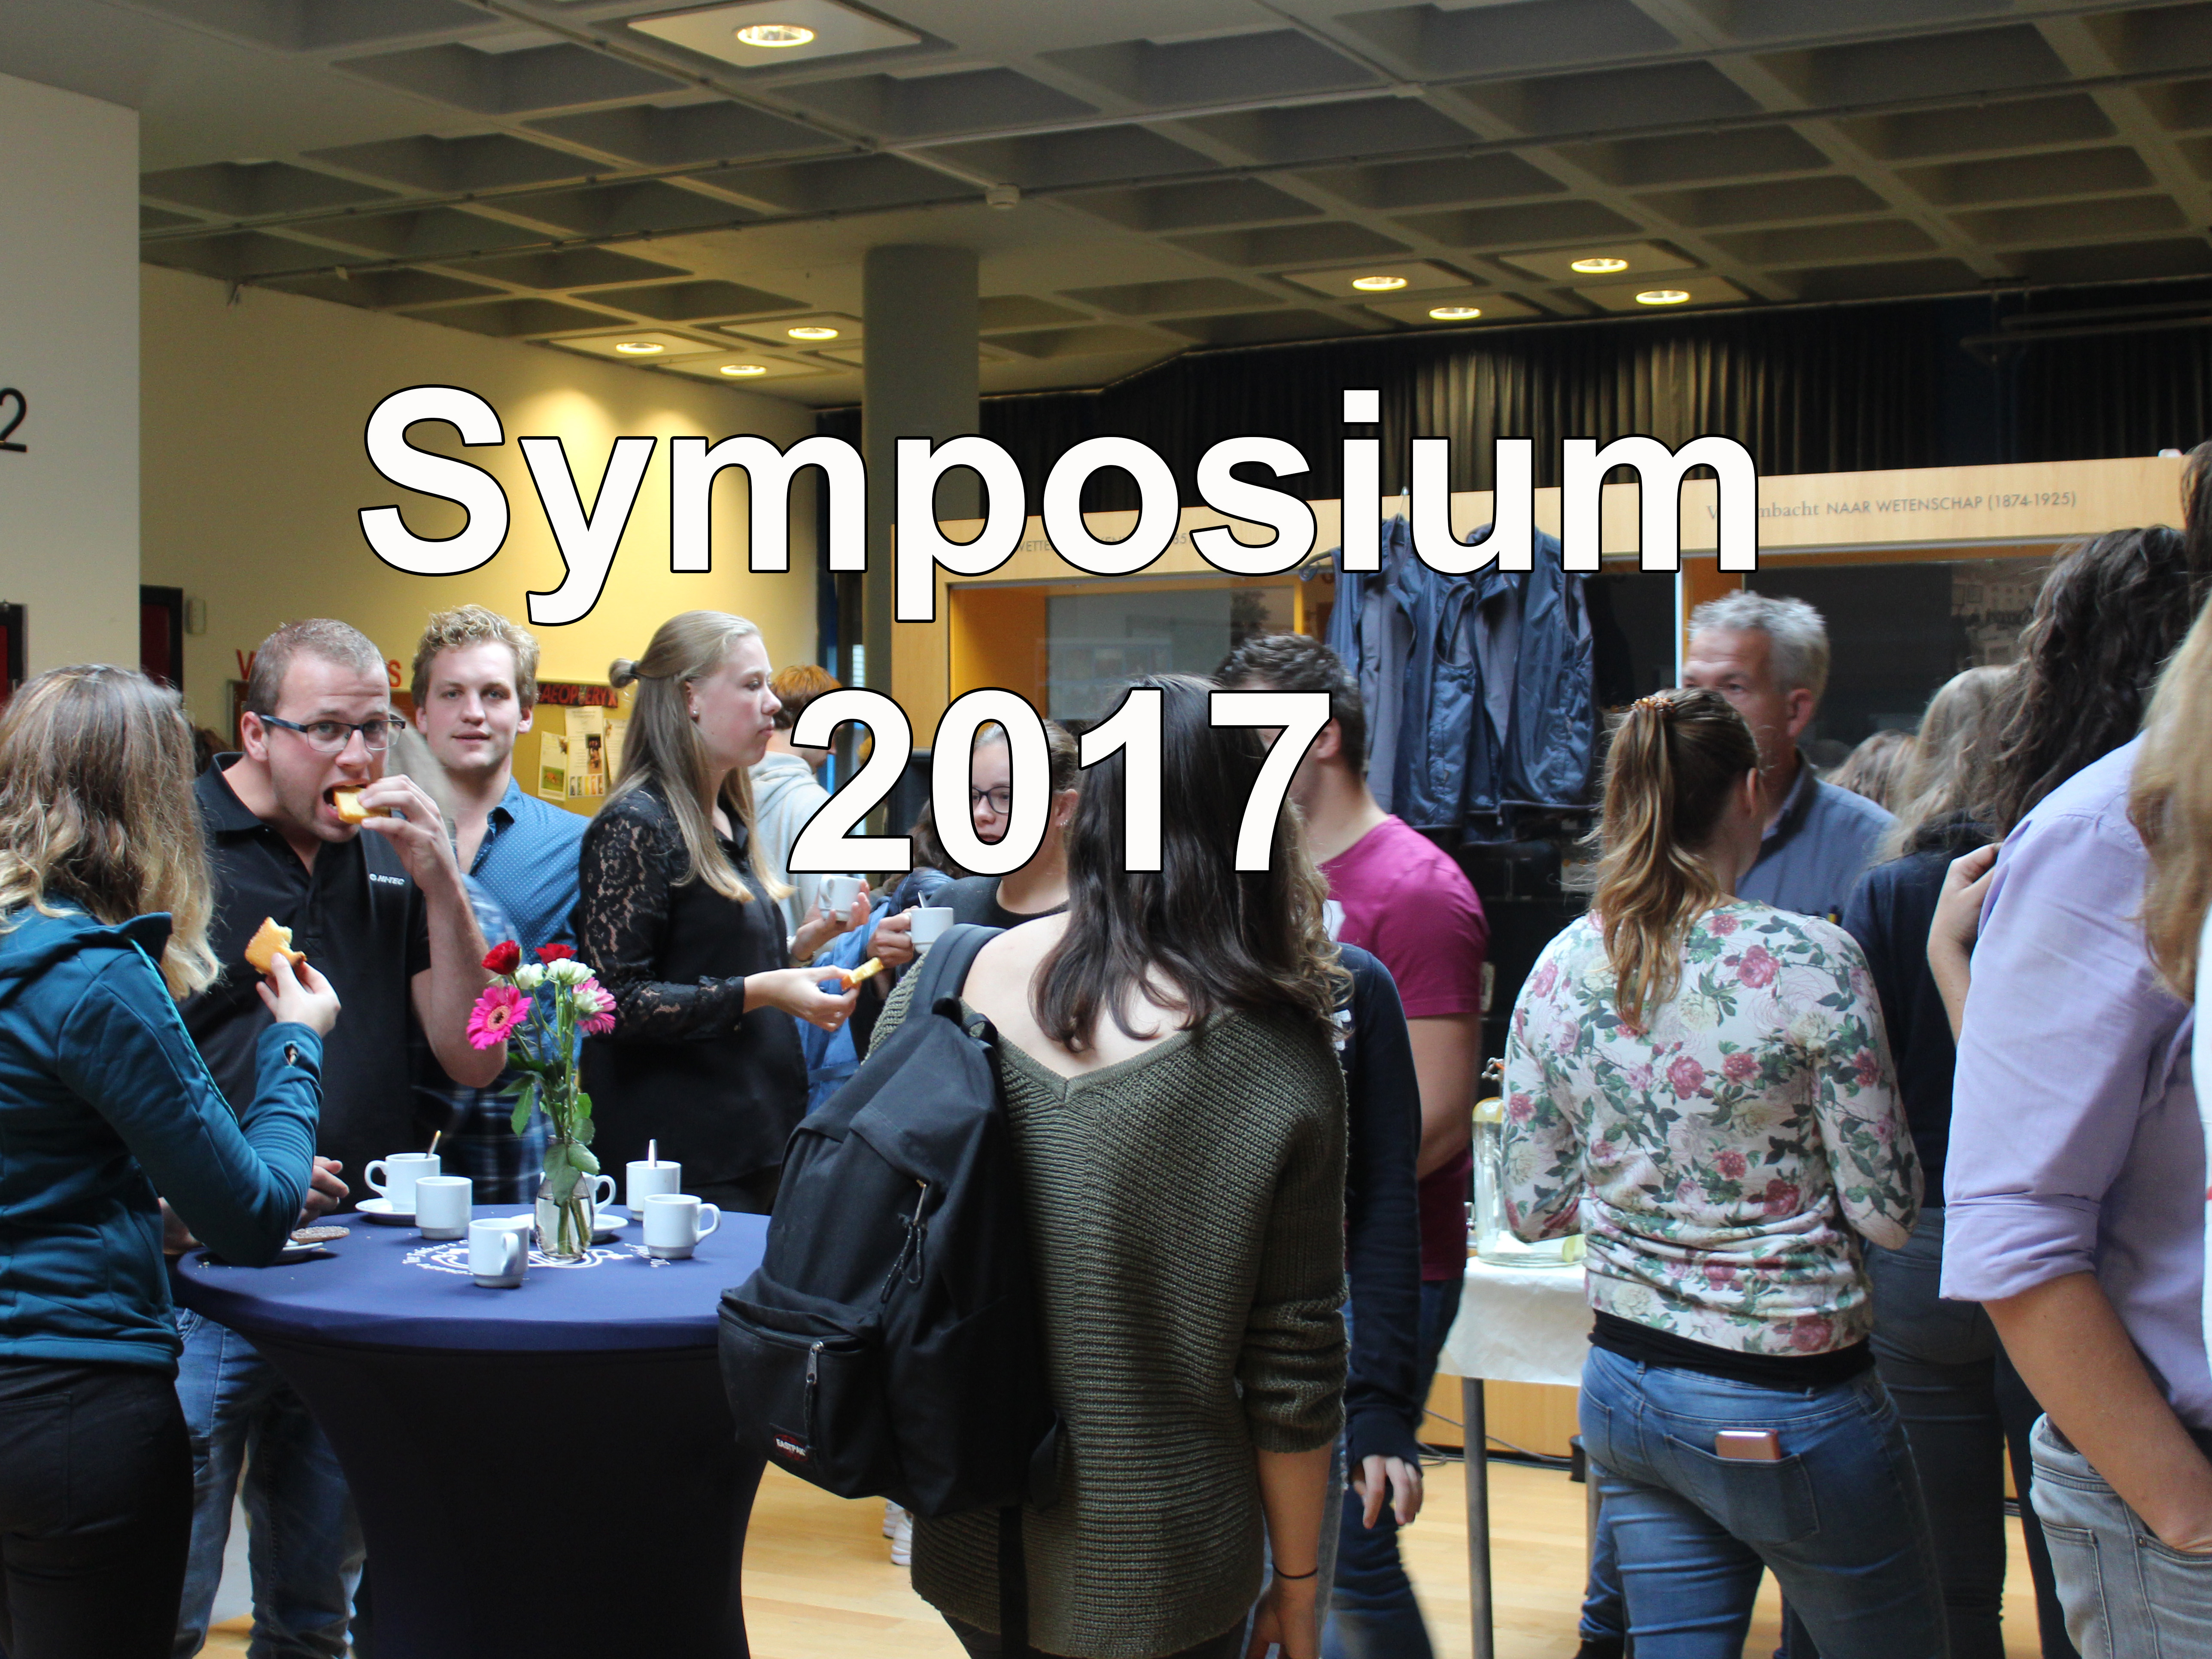 Symposium 2017